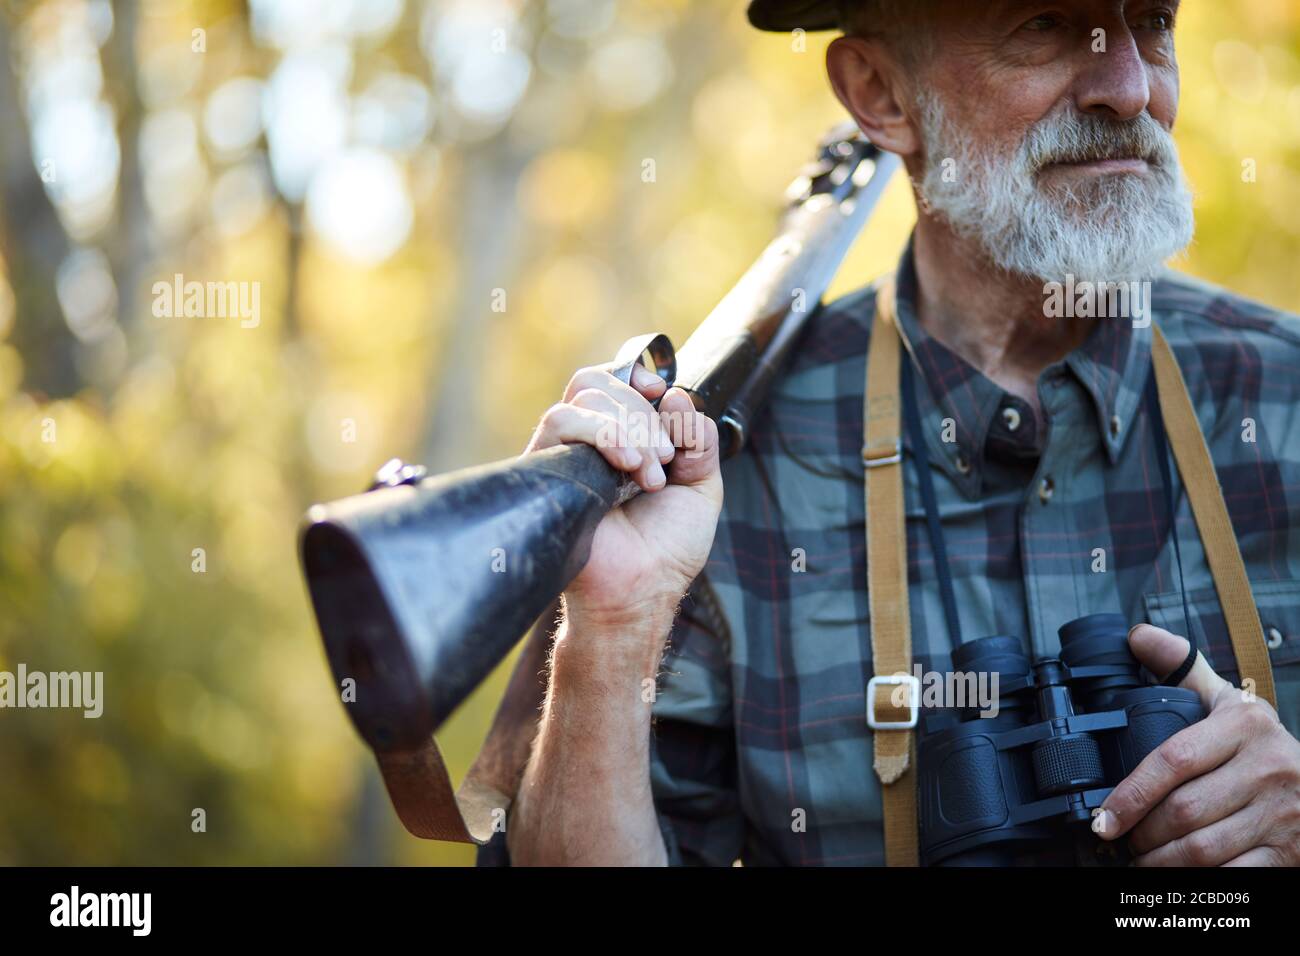 Chasseur barbu avec canon sur épaule, binoculaire d'une main. Cherchez le trophée en forêt Banque D'Images